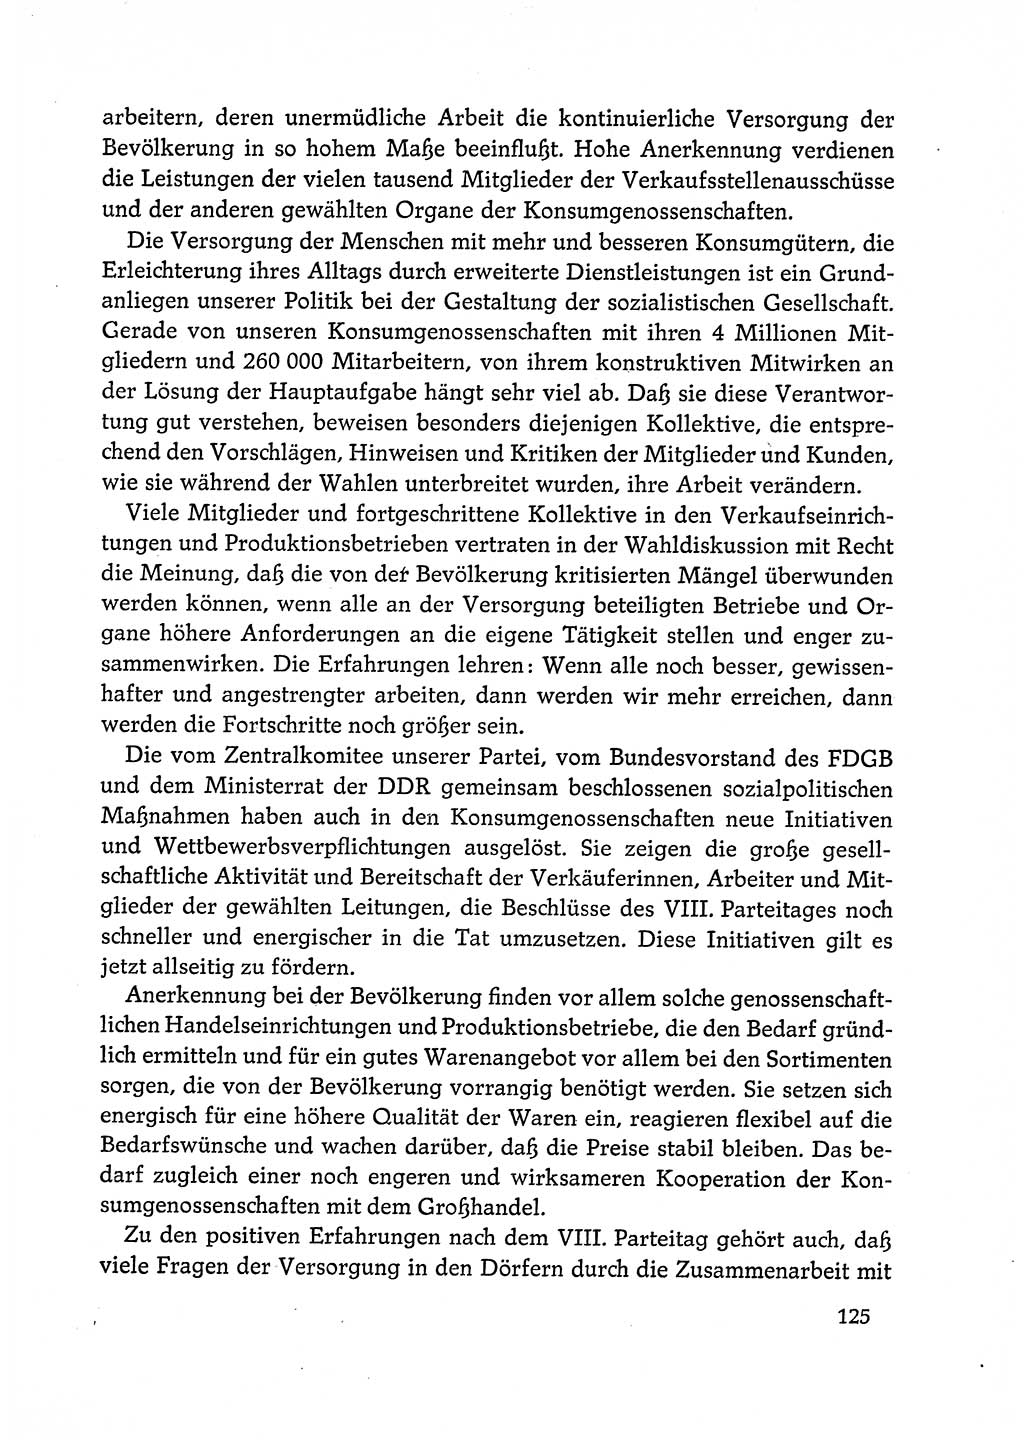 Dokumente der Sozialistischen Einheitspartei Deutschlands (SED) [Deutsche Demokratische Republik (DDR)] 1972-1973, Seite 125 (Dok. SED DDR 1972-1973, S. 125)